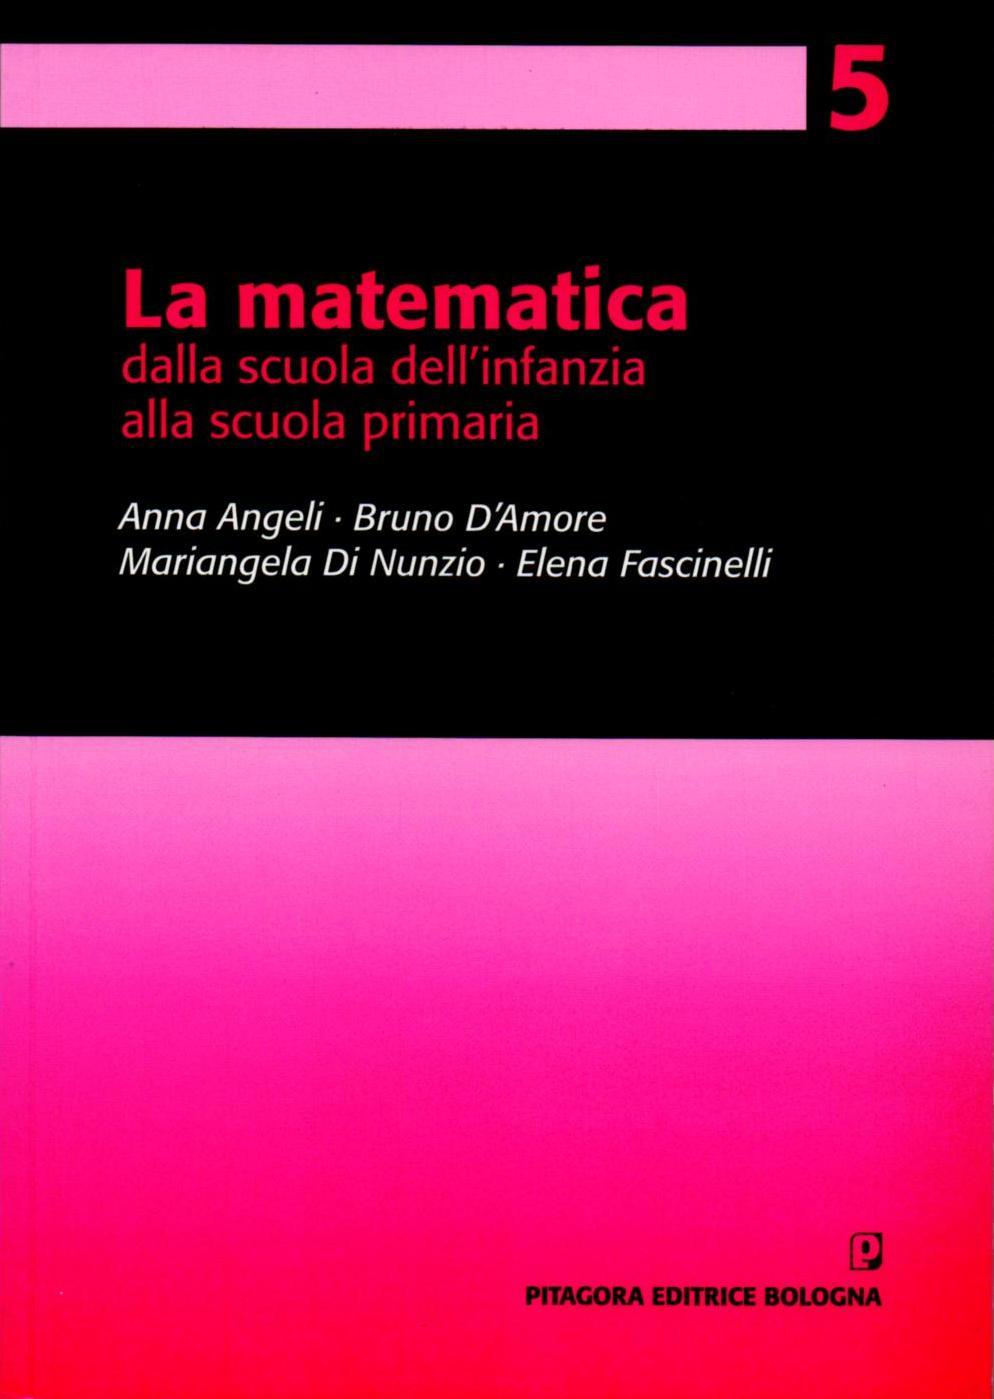 Angeli A., D Amore B., Di Nunzio M., Fascinelli E. (2011).